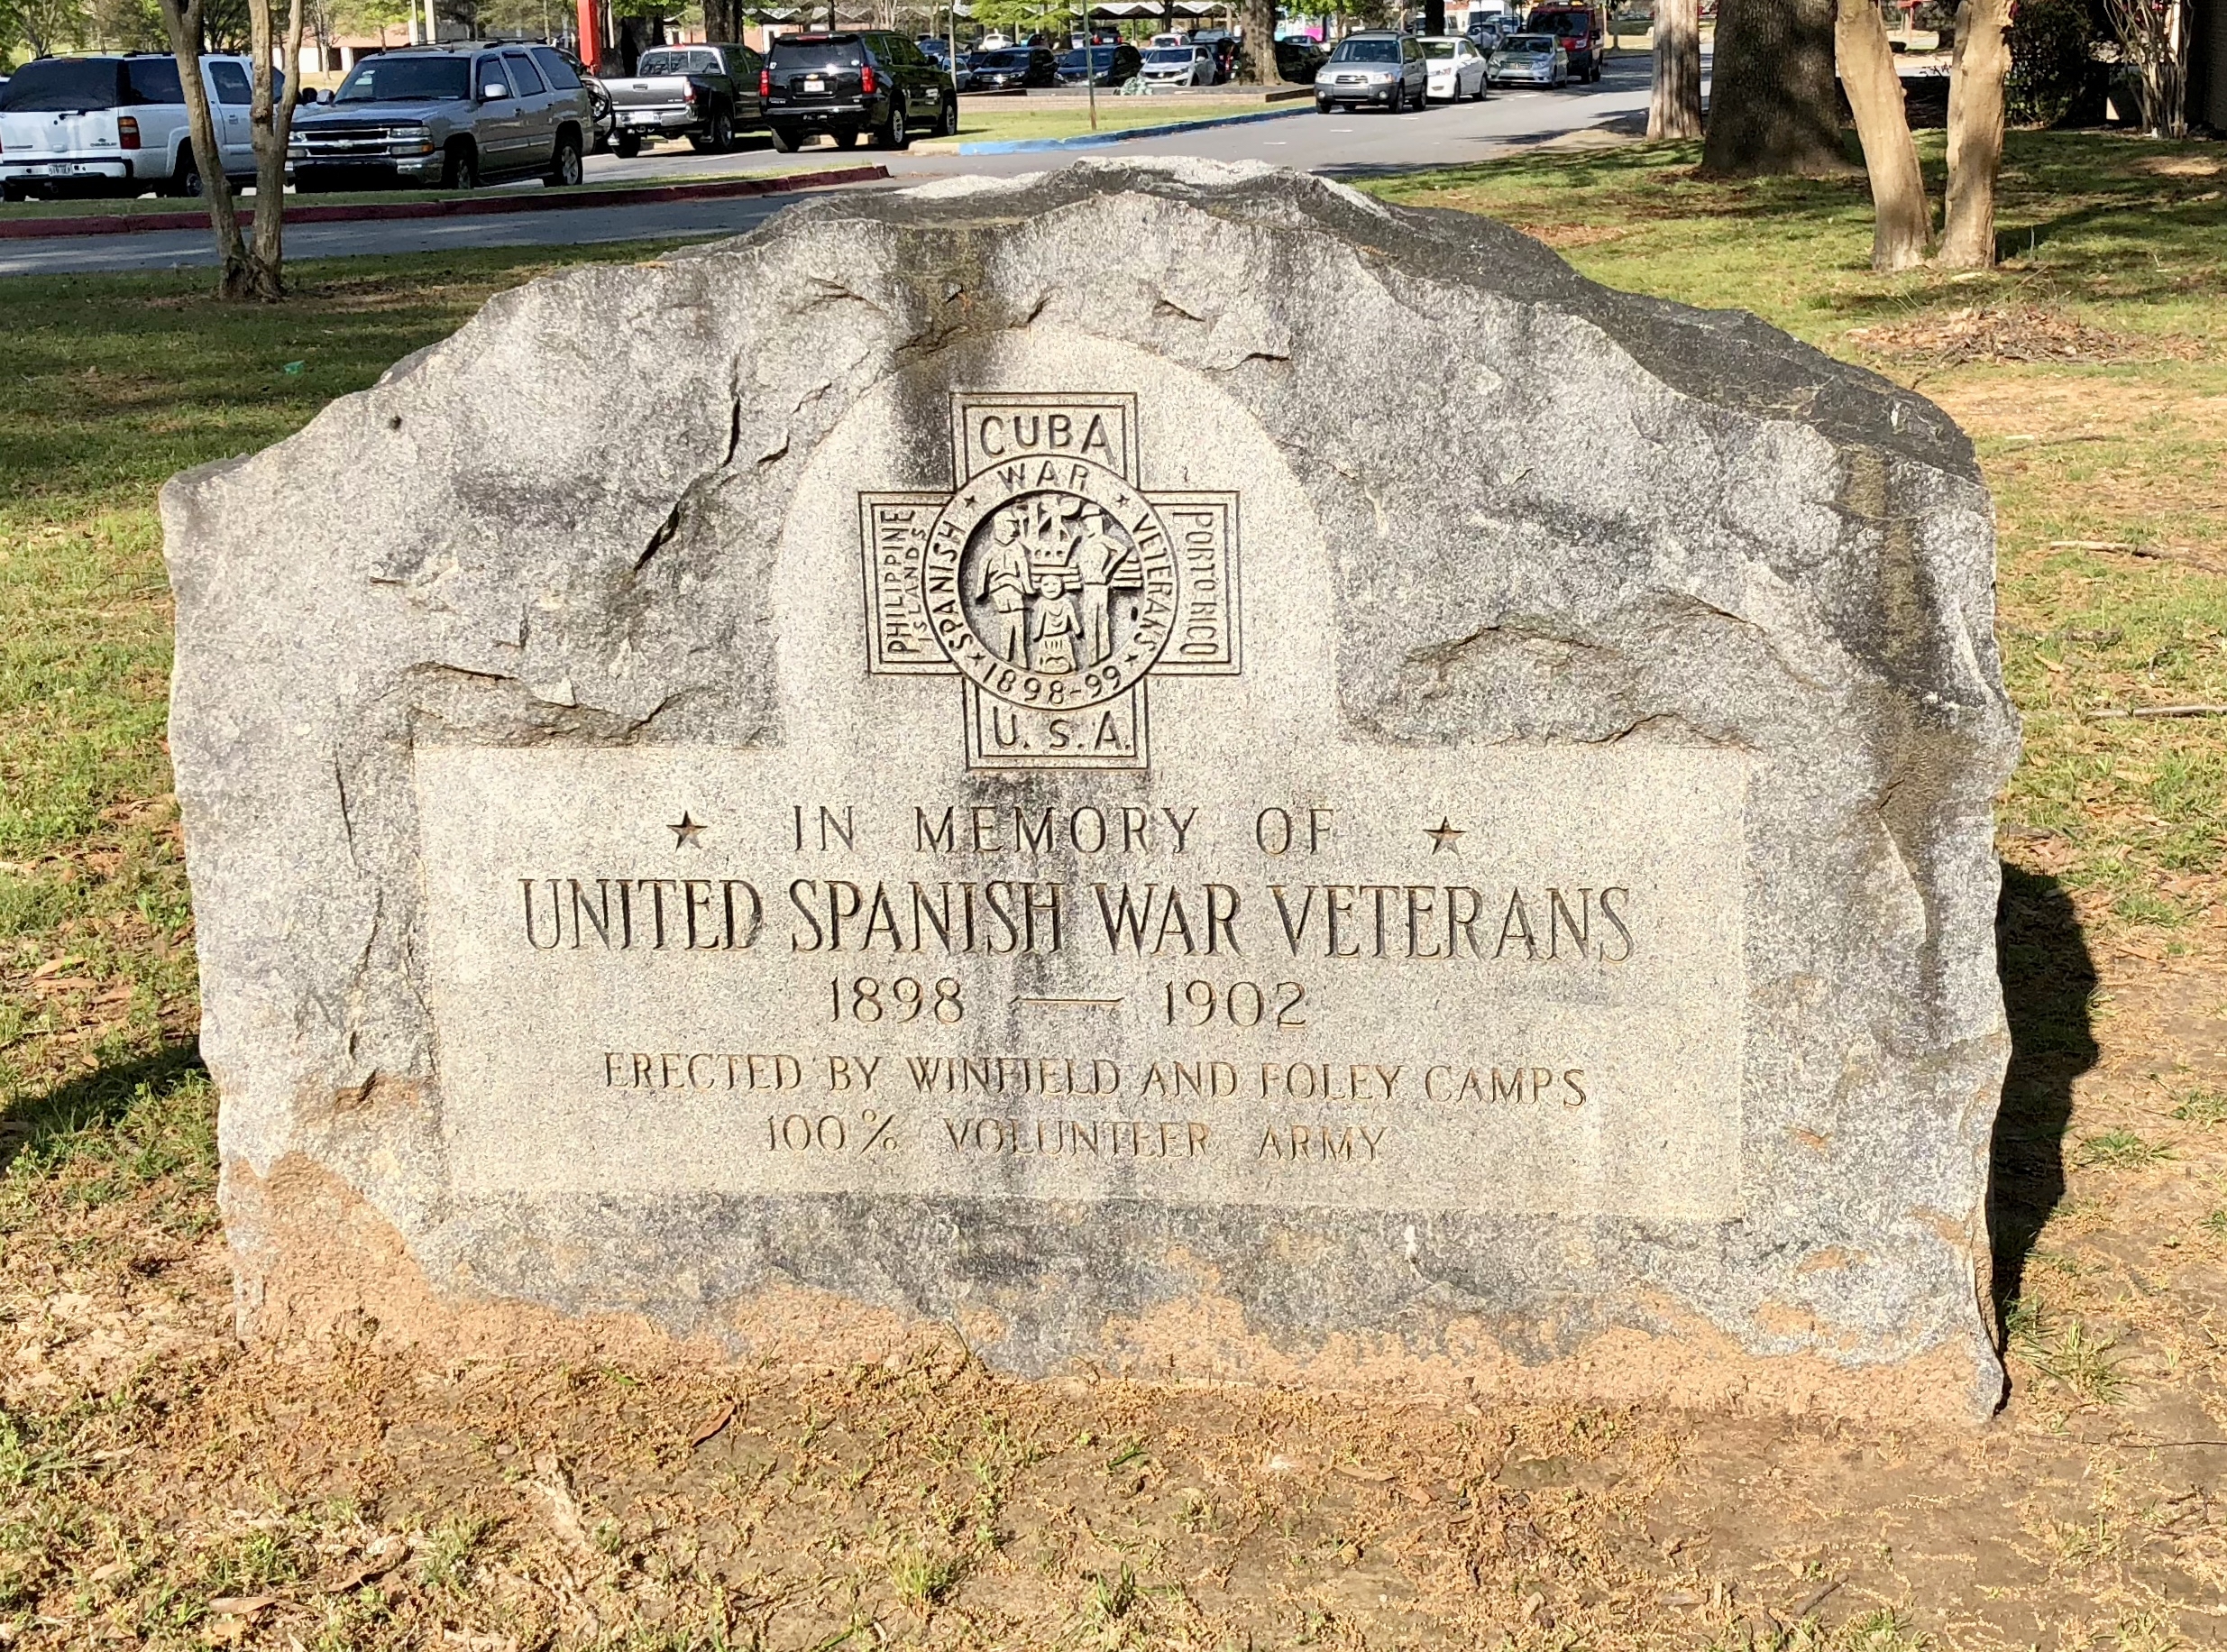 United Spanish War Veterans memorial